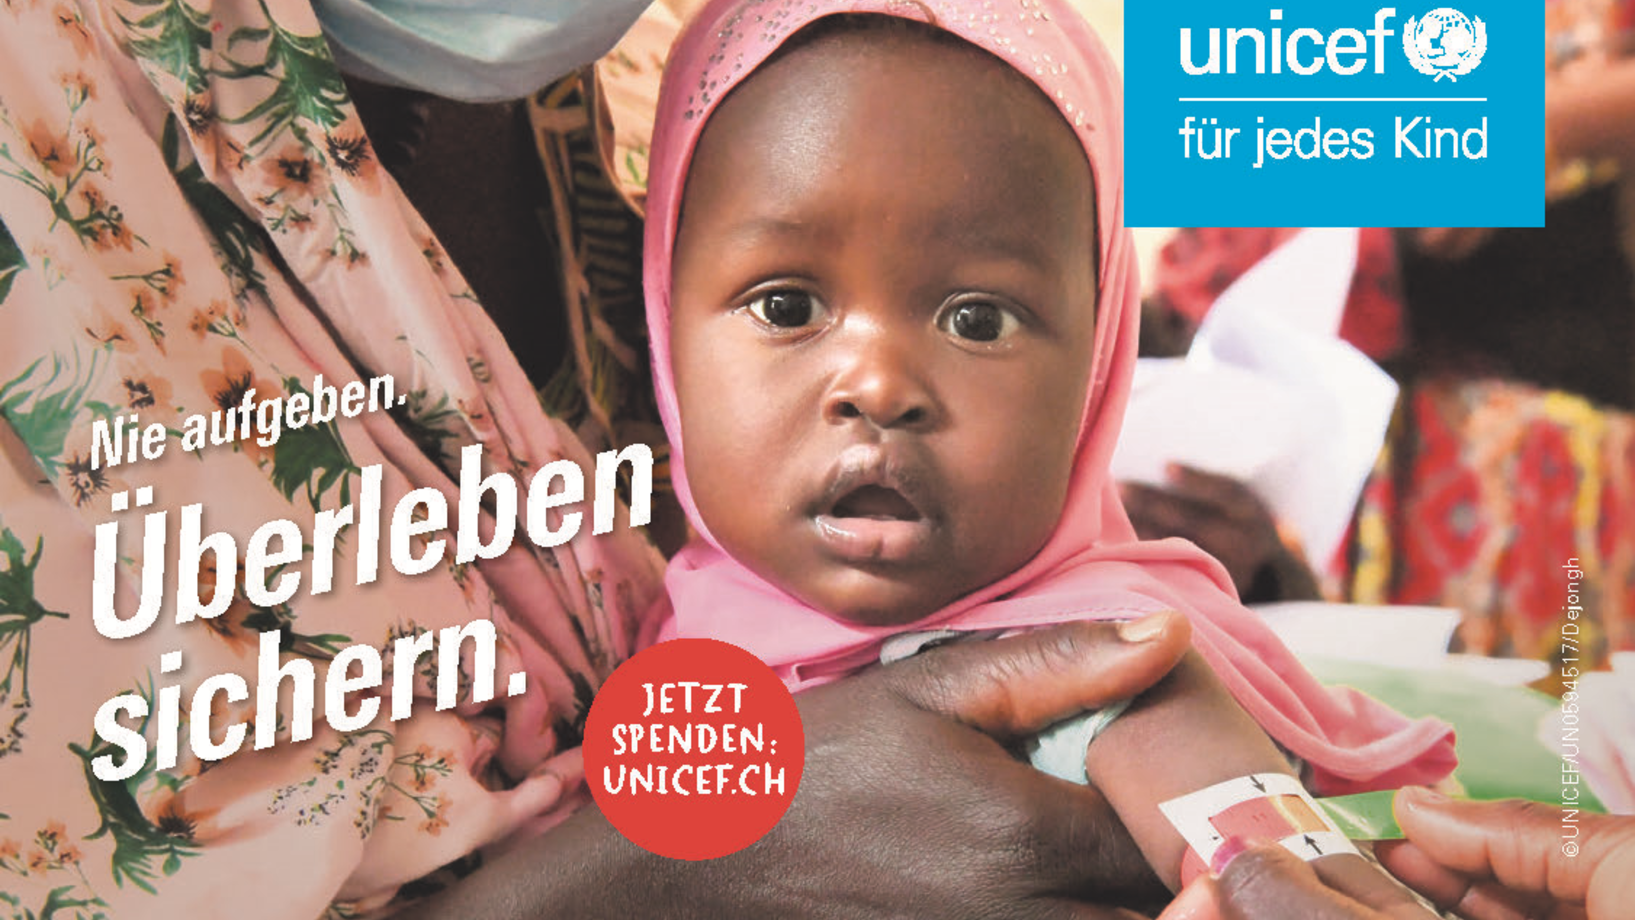 UNICEF_AZ_Fueller_Hunger_143x90mm_quer_klein_DE.png